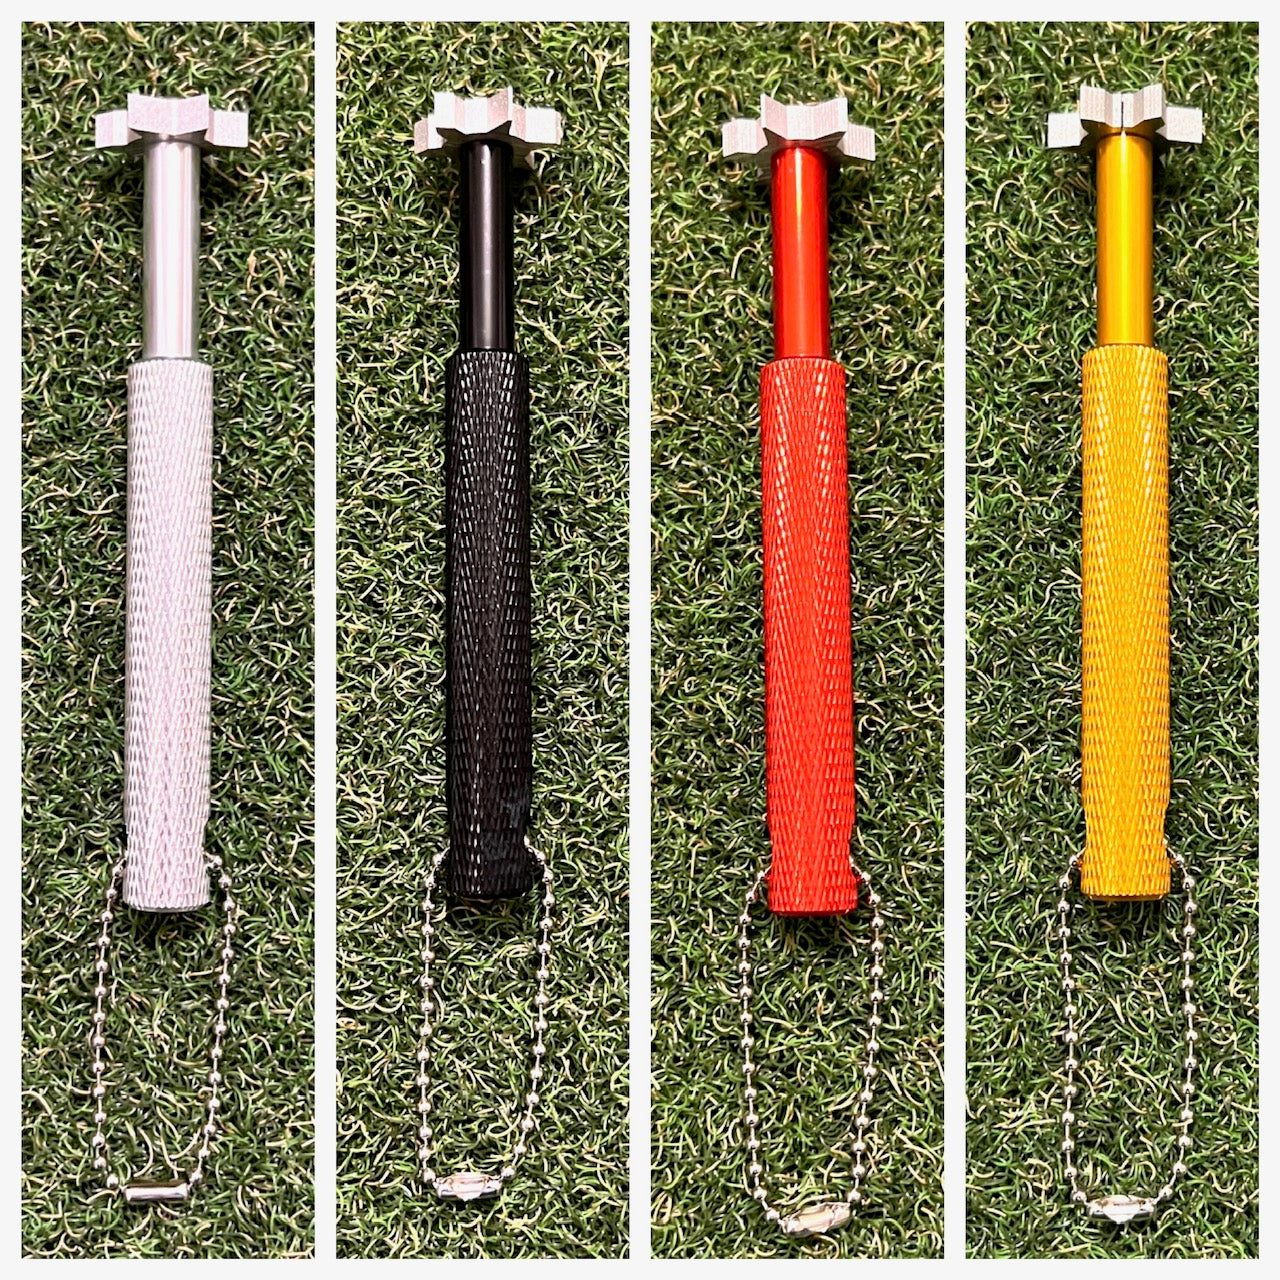 Golf Club Groove Sharpener Tool für mehr Spin Eisen/Wedge – Wählen Sie die Farbe